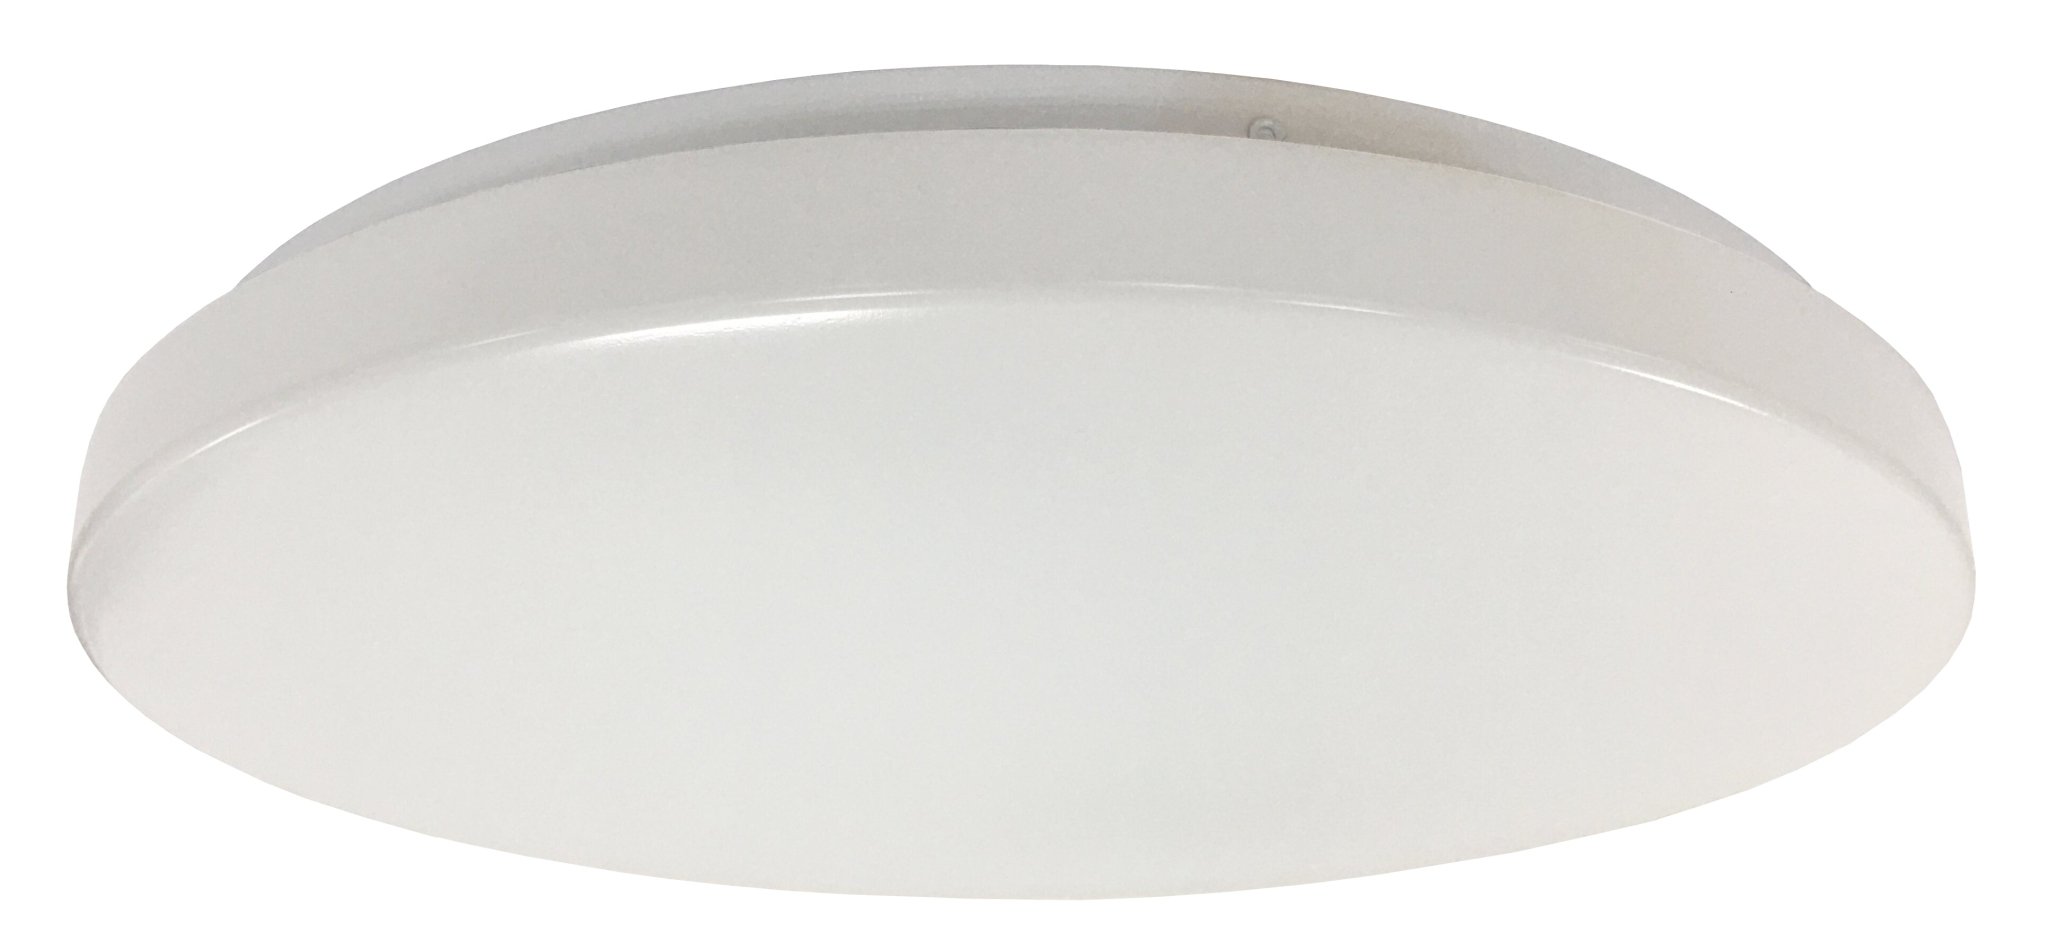 Orbit LED Oyster Light Tricolour in White 12w - Mases LightingMartec